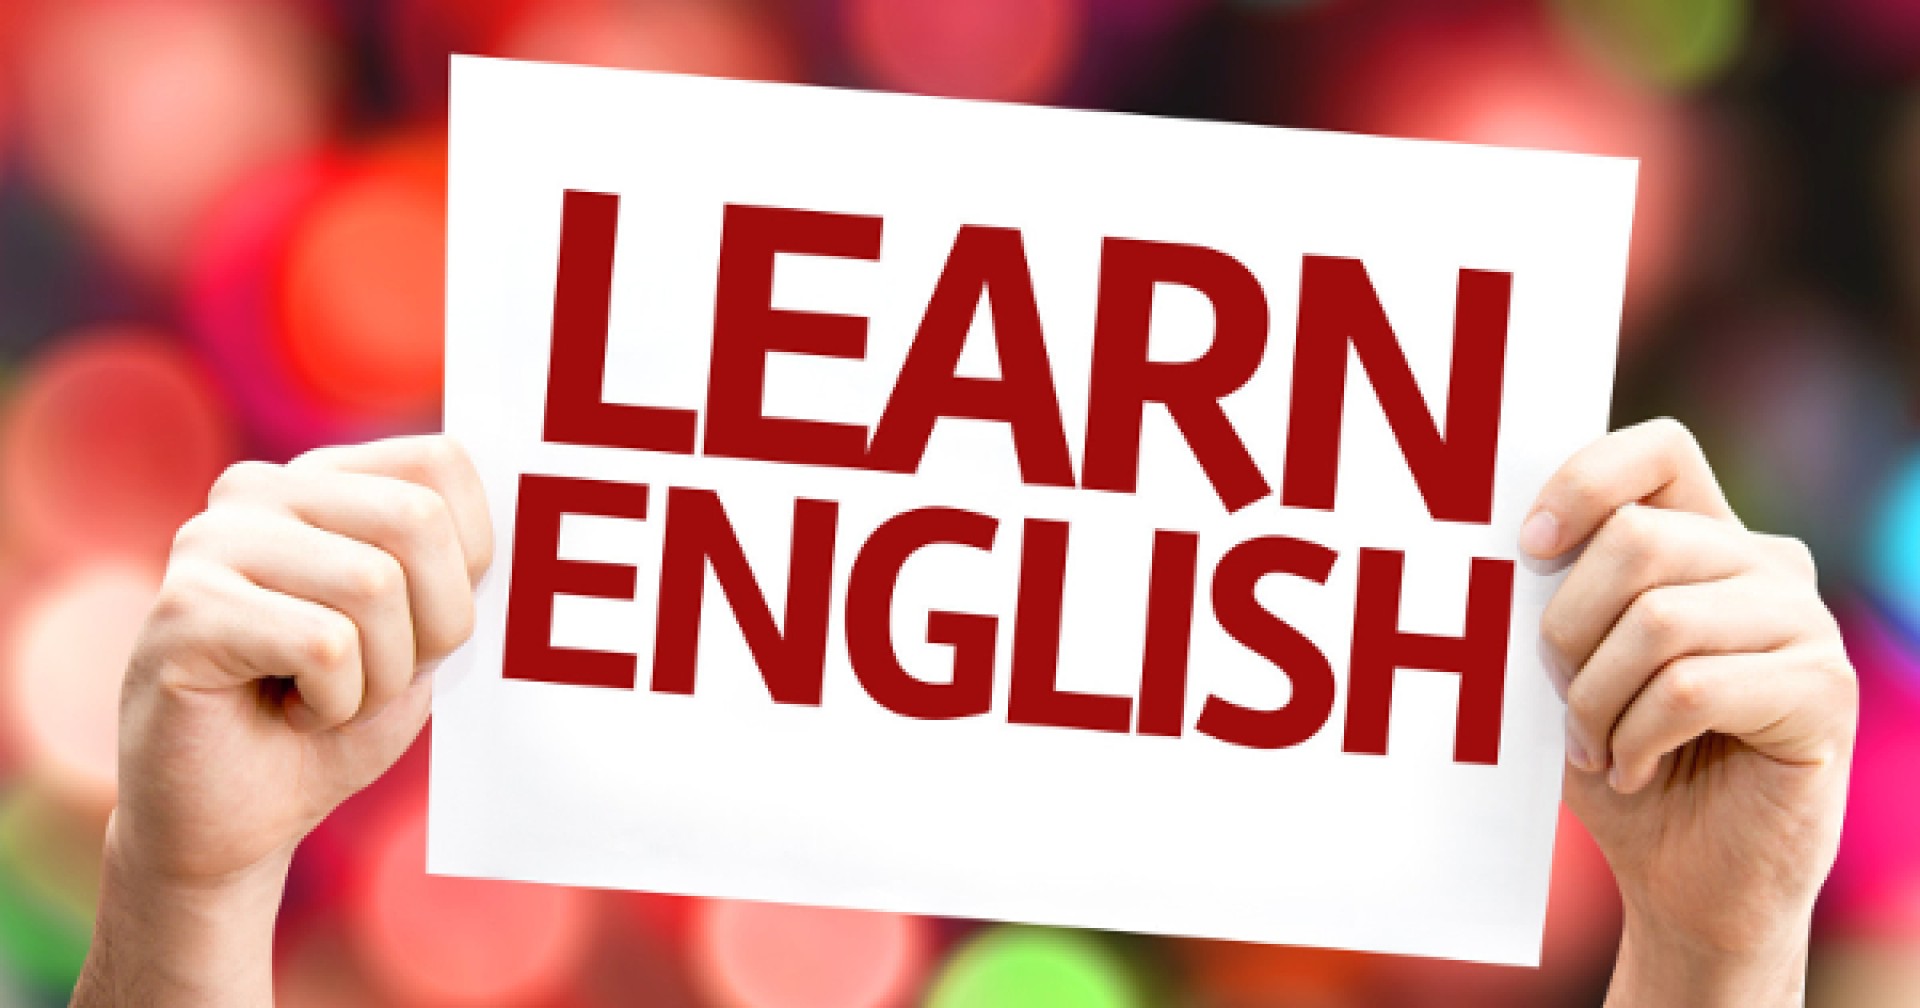 13 phương pháp giúp bạn cải thiện khả năng nói tiếng Anh mà không cần người nói cùng